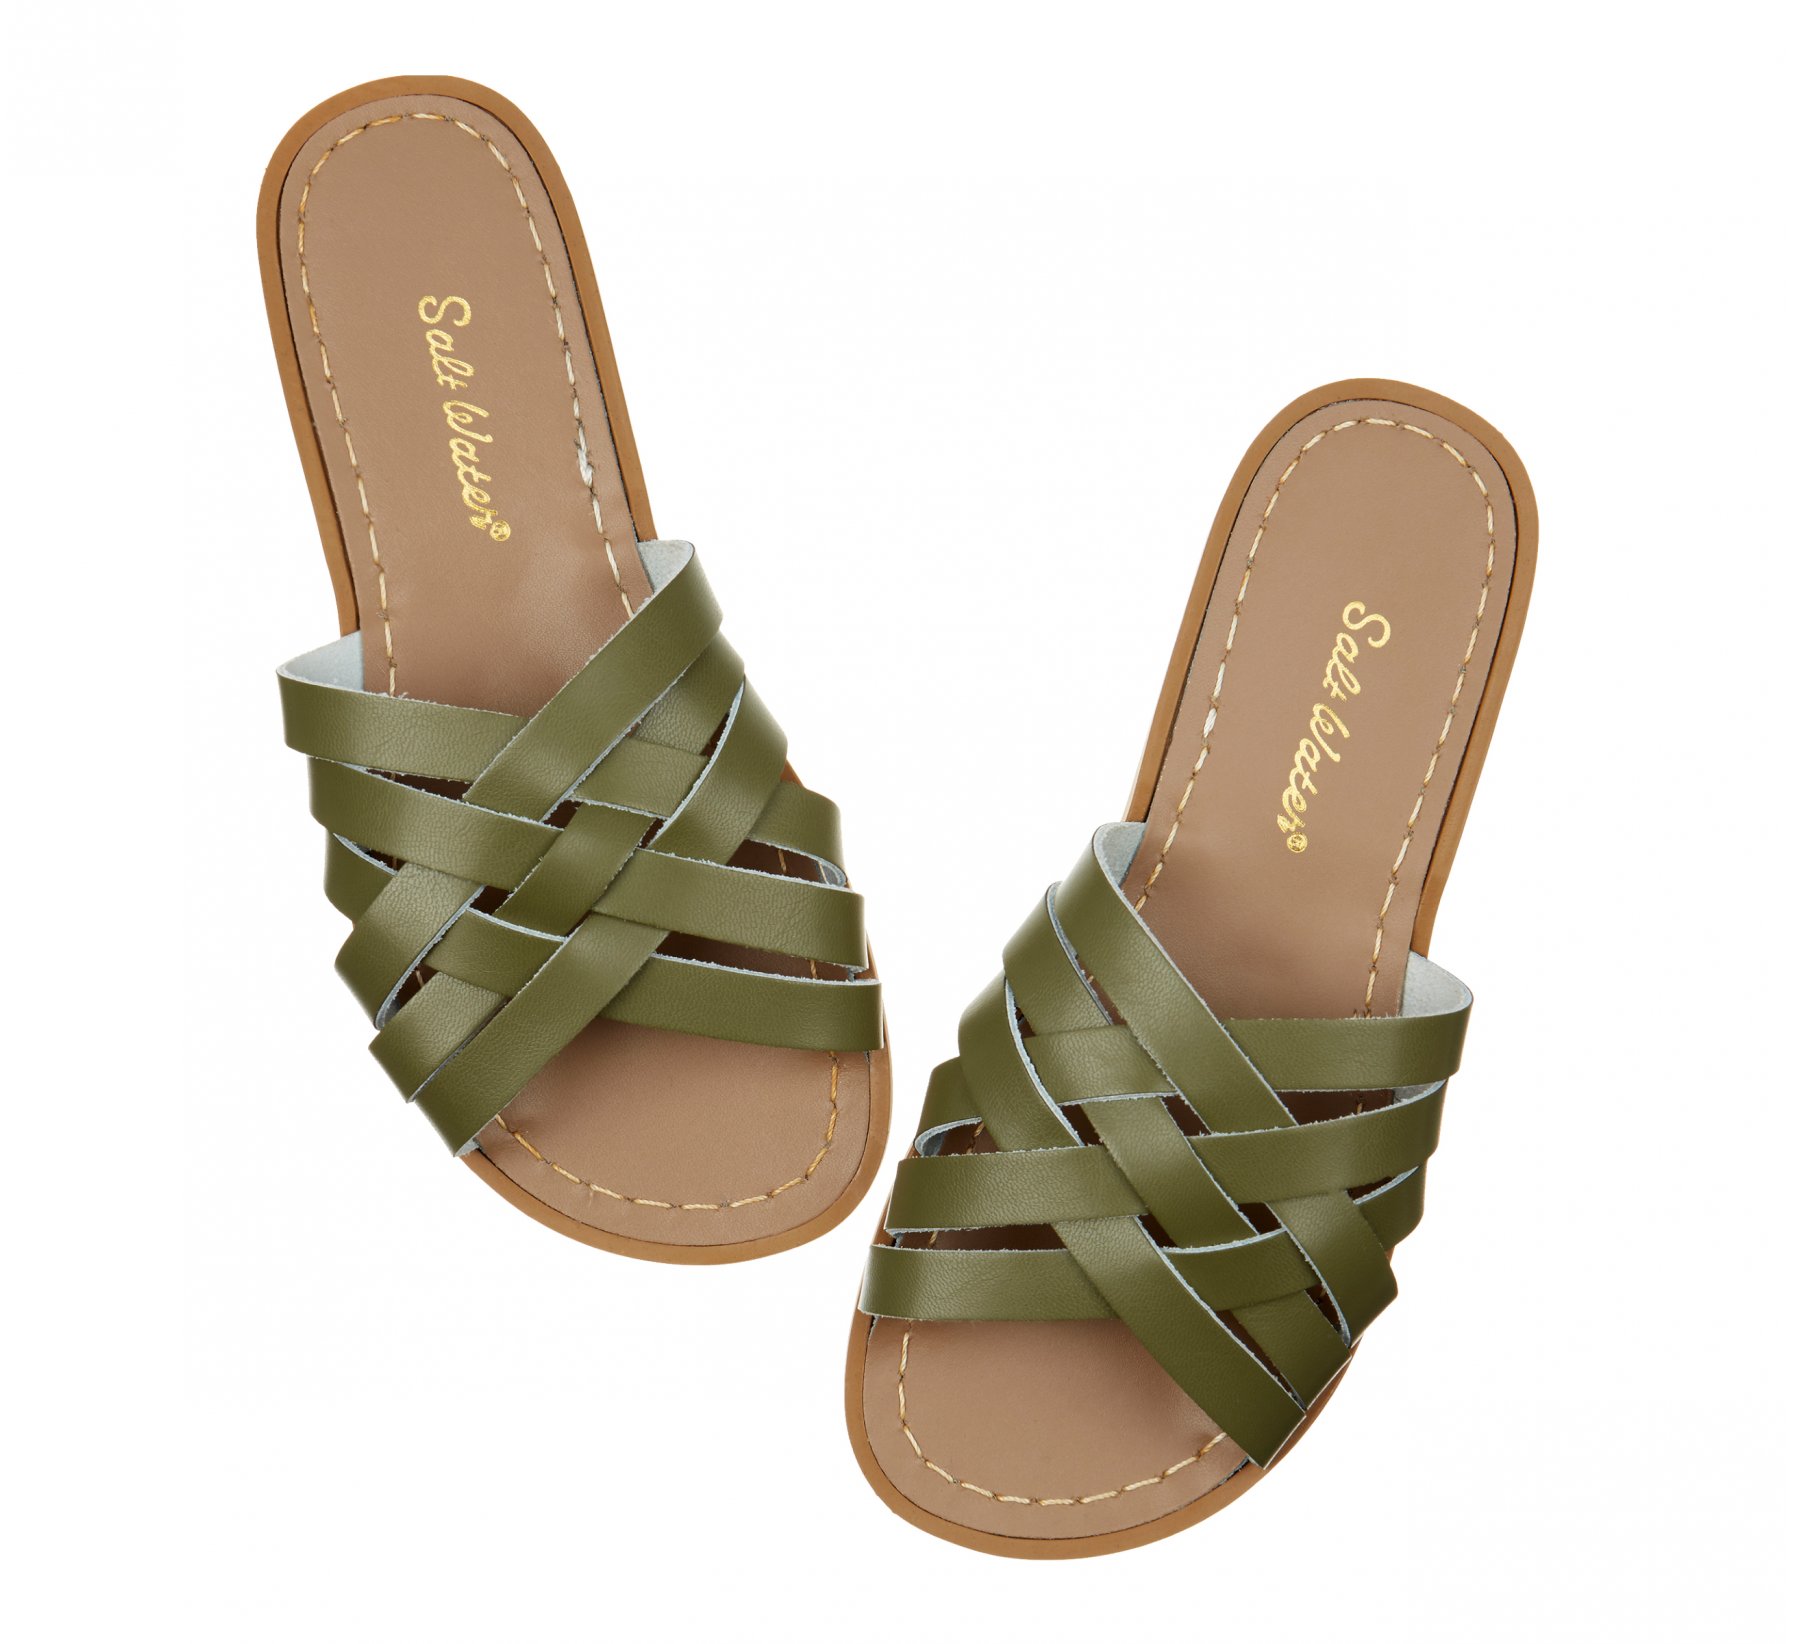 Retro Slide Olive Sandal - Salt Water Sandals